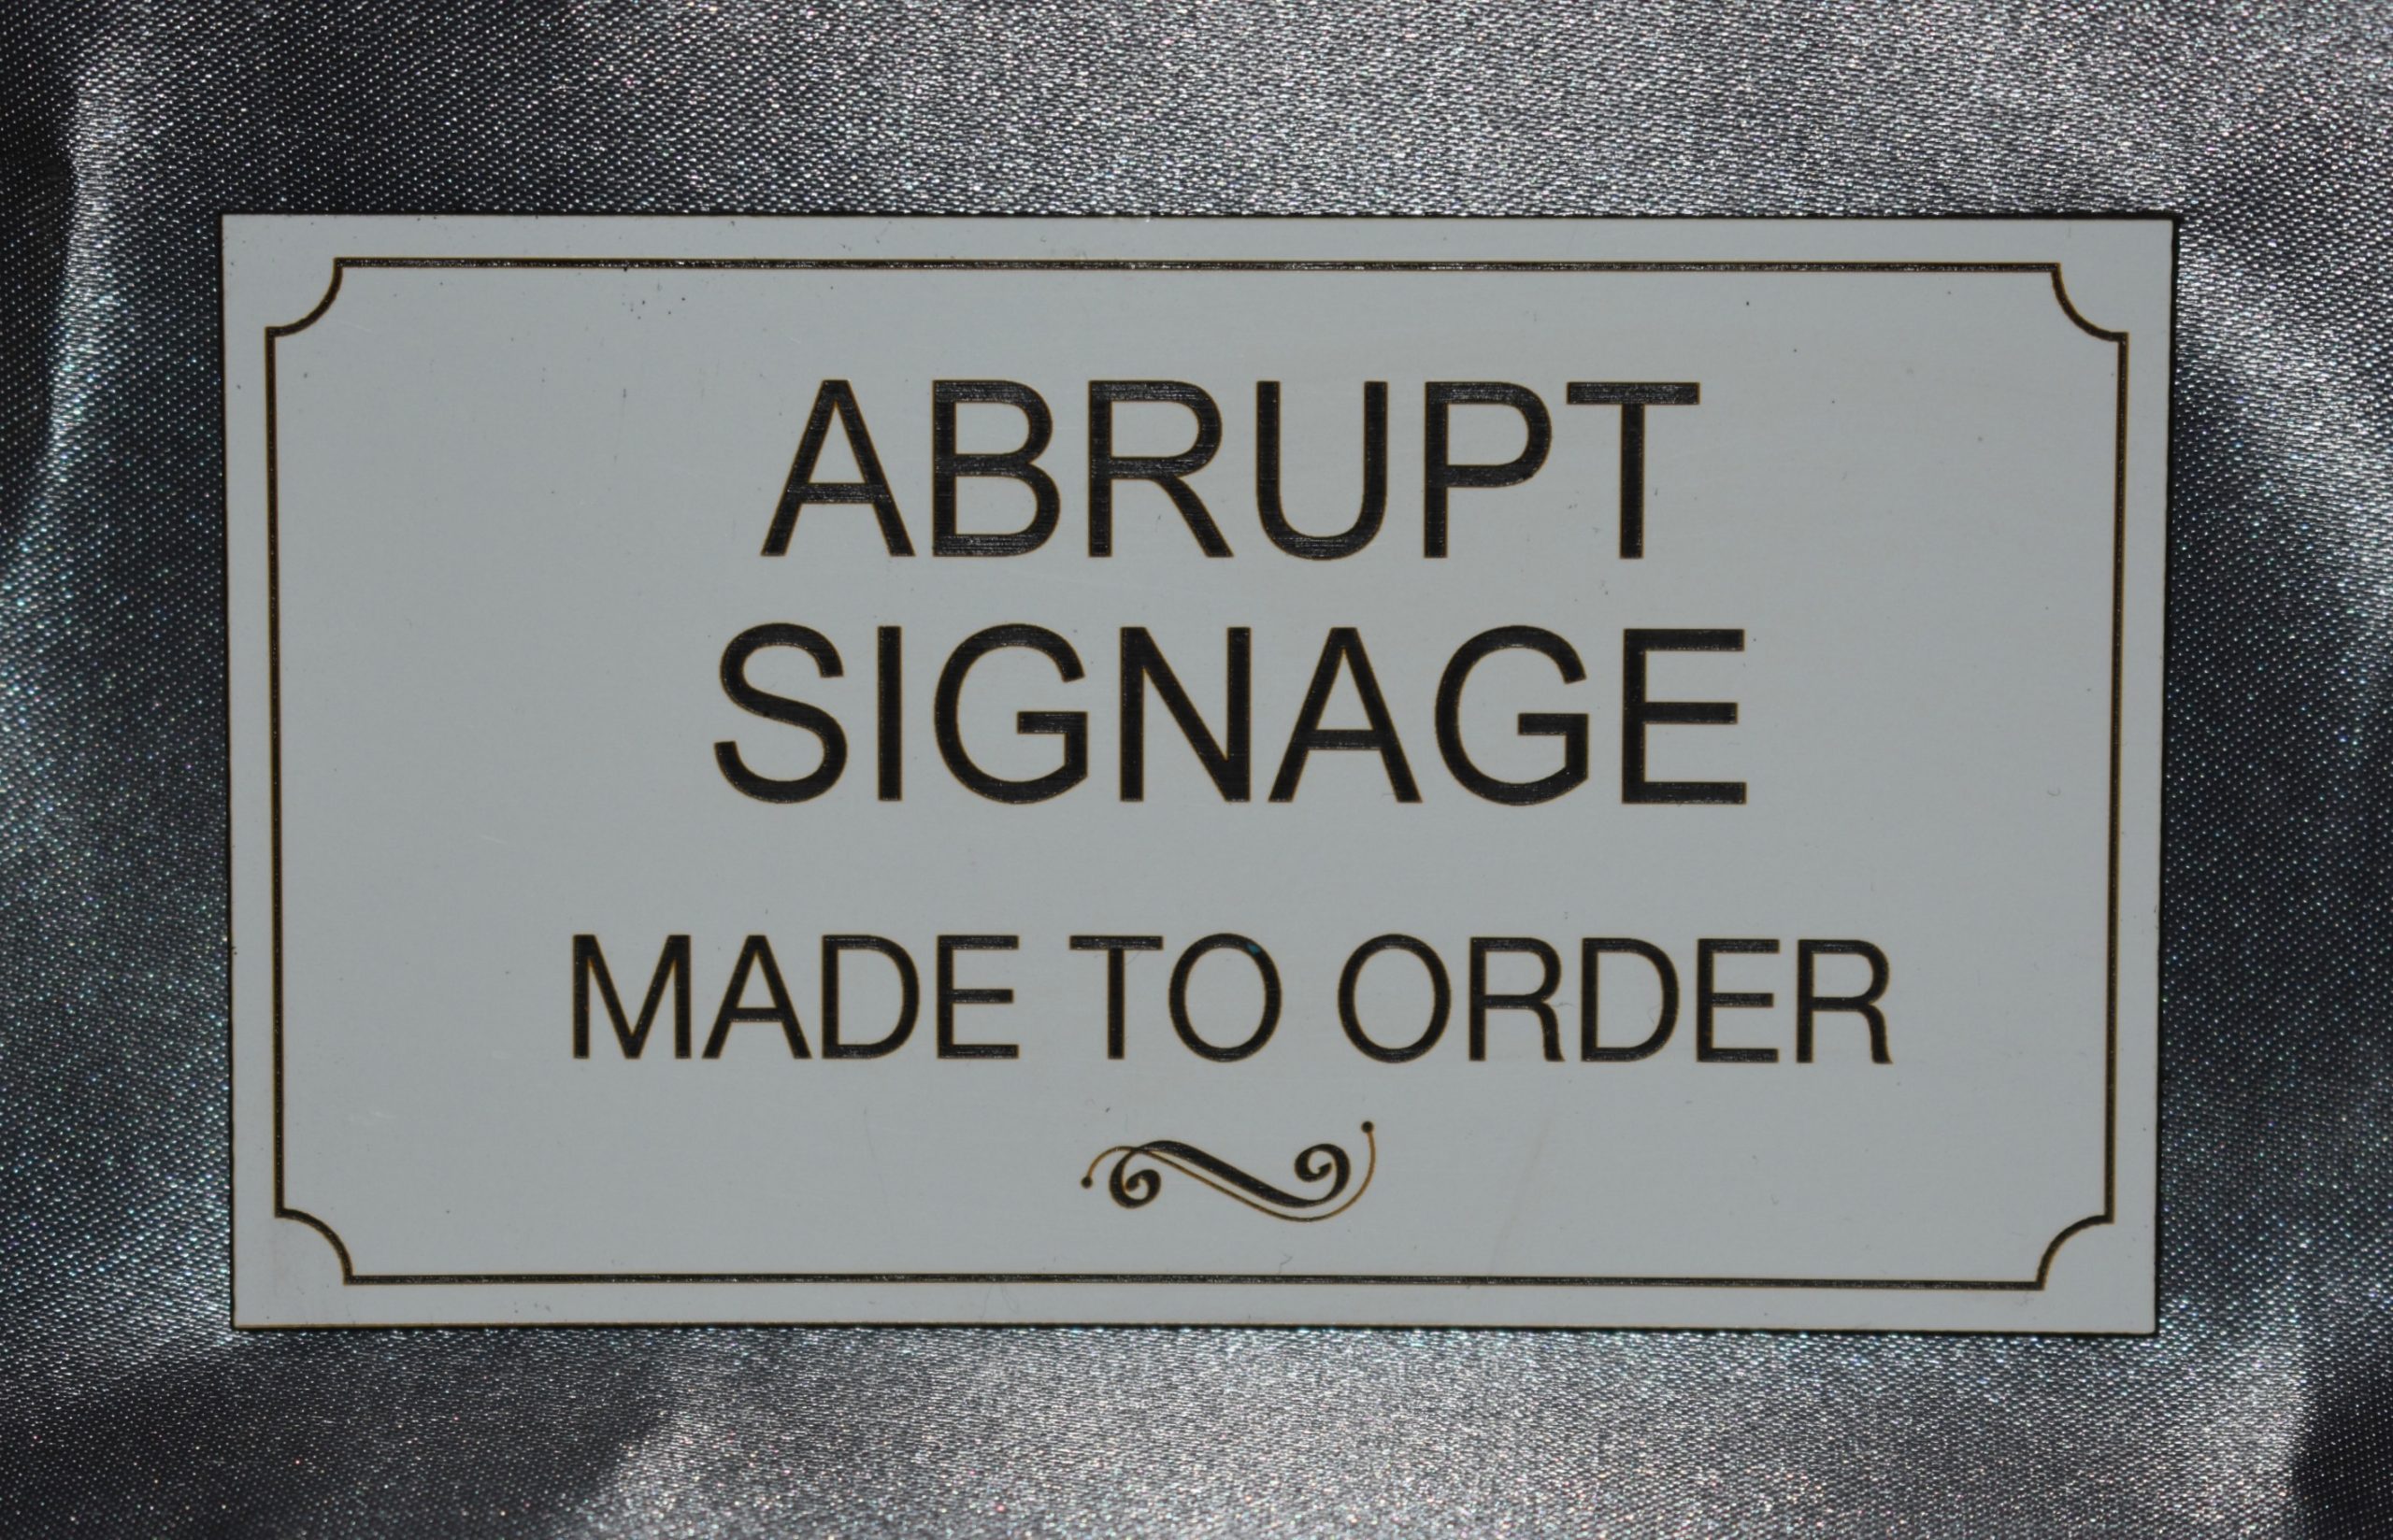 Signage